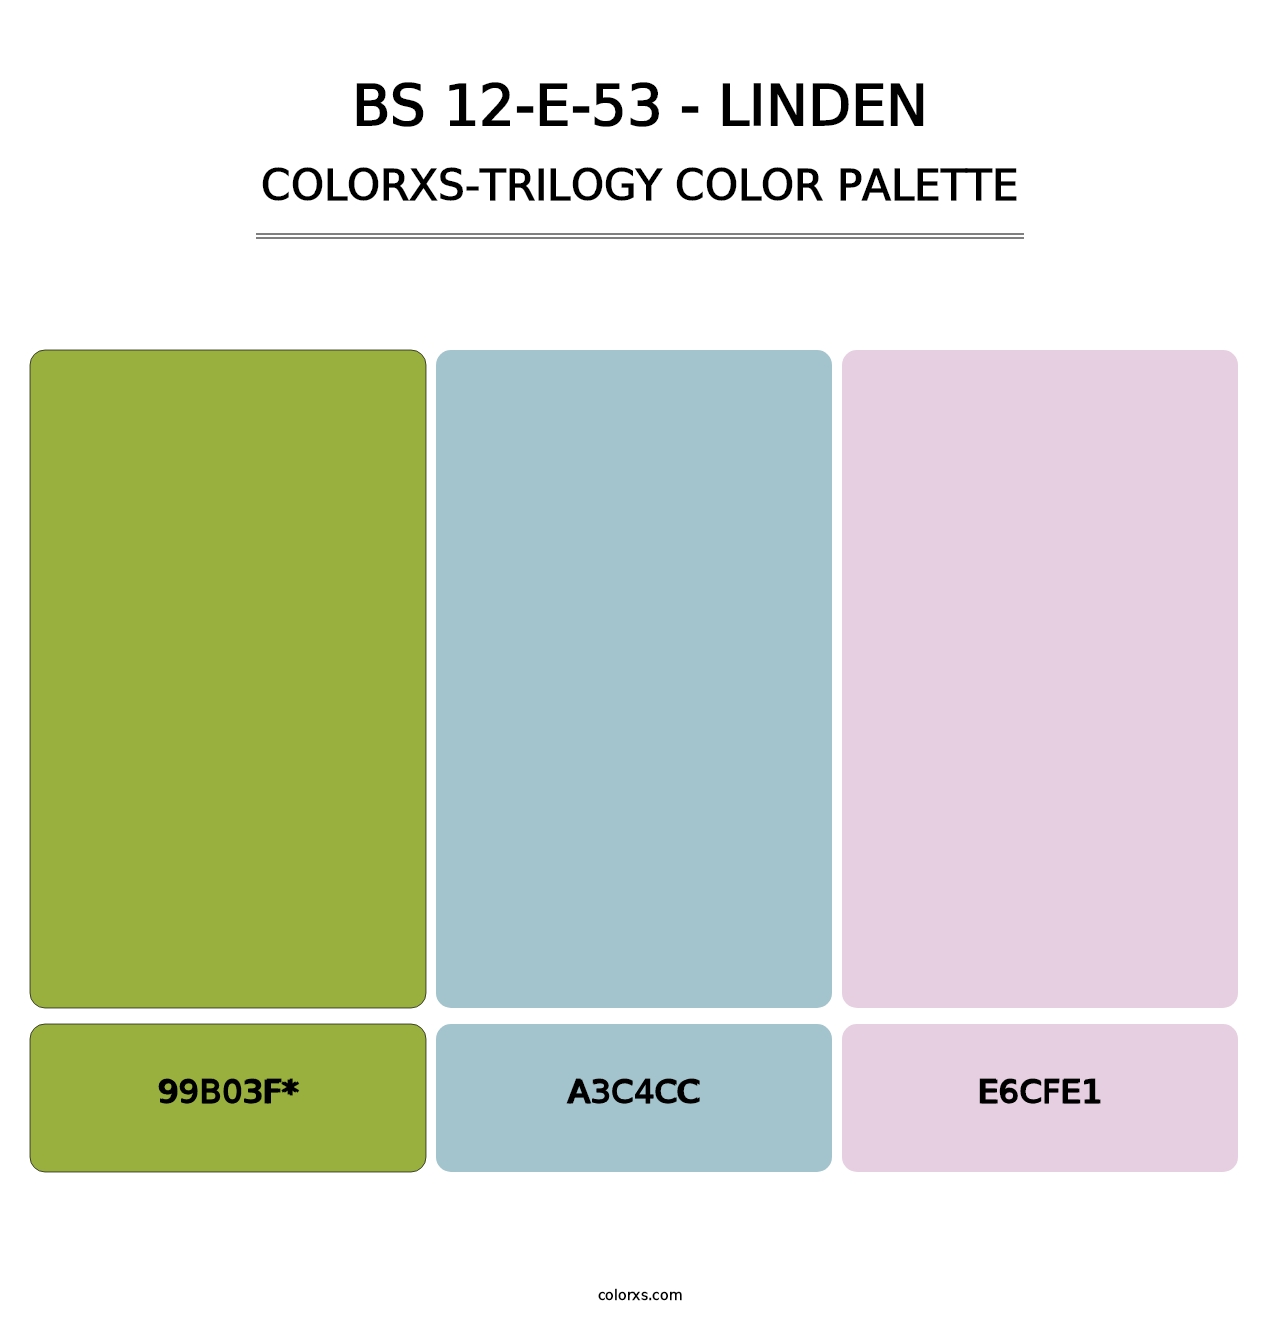 BS 12-E-53 - Linden - Colorxs Trilogy Palette